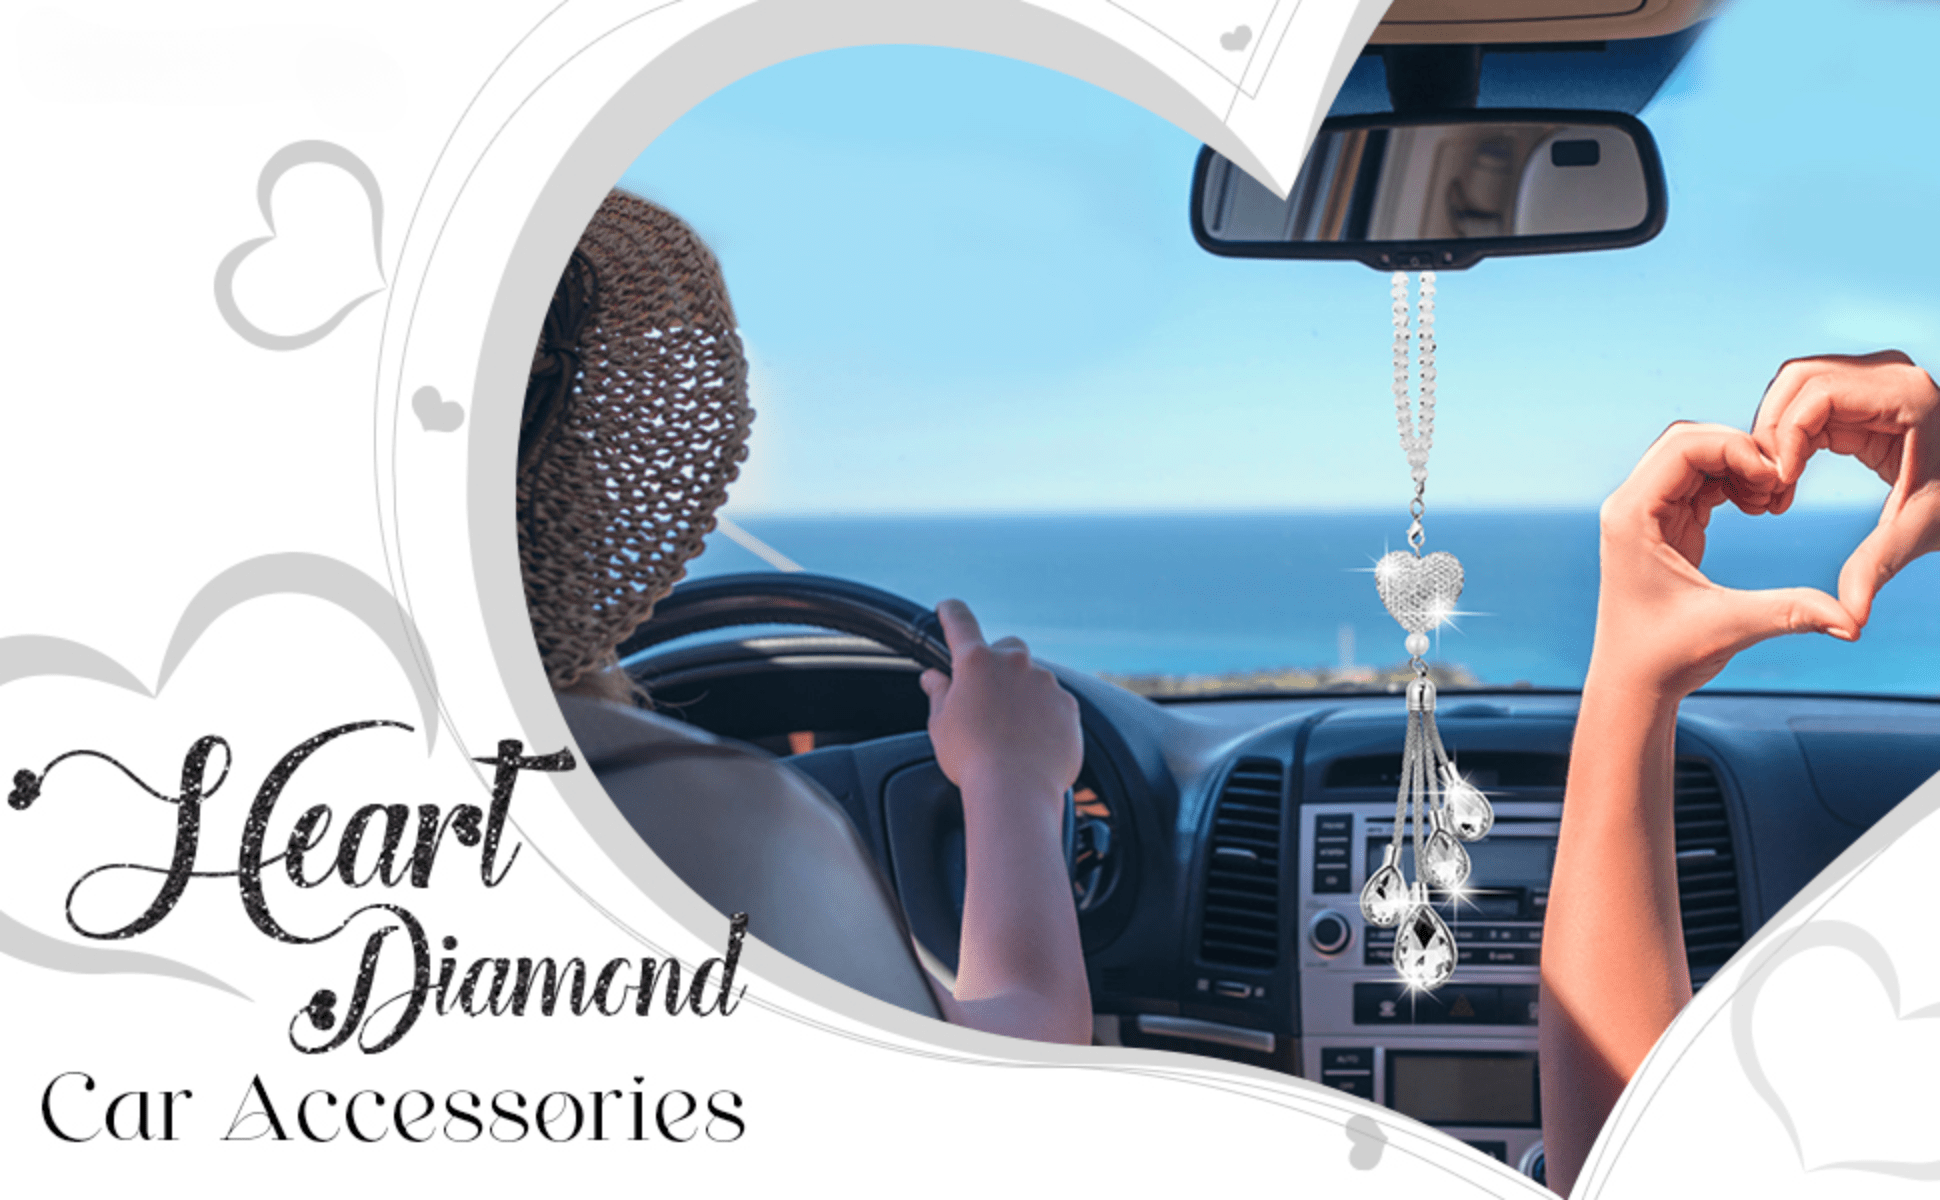 Diamond Pearl Car Pendant Cute Cartoon Heart Star Tassels Rearview